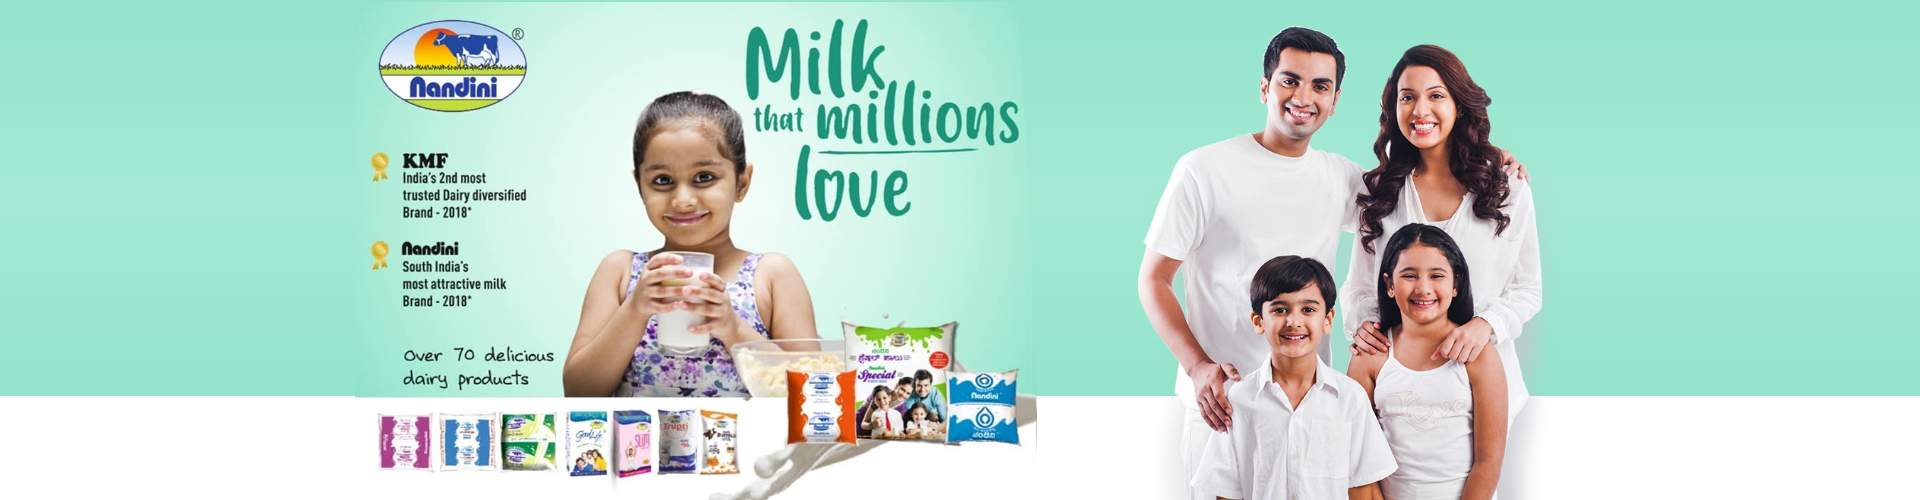 Bamul Nandini – Bangalore Milk Union Limited